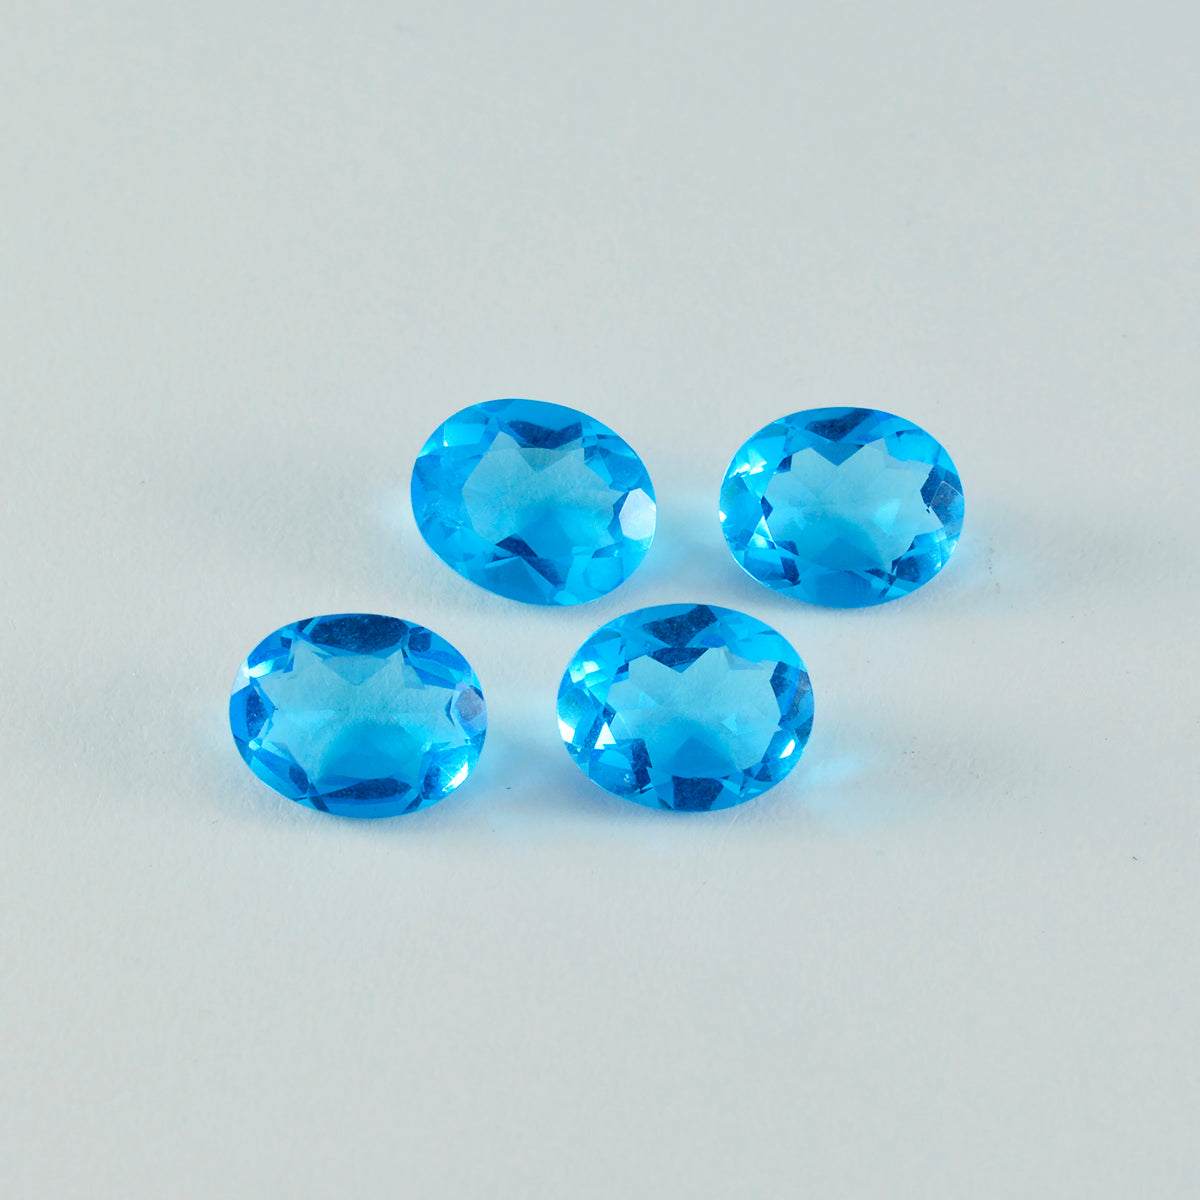 Riyogems 1 Stück blauer Topas, CZ, facettiert, 12 x 16 mm, ovale Form, schön aussehender Qualitäts-Edelstein